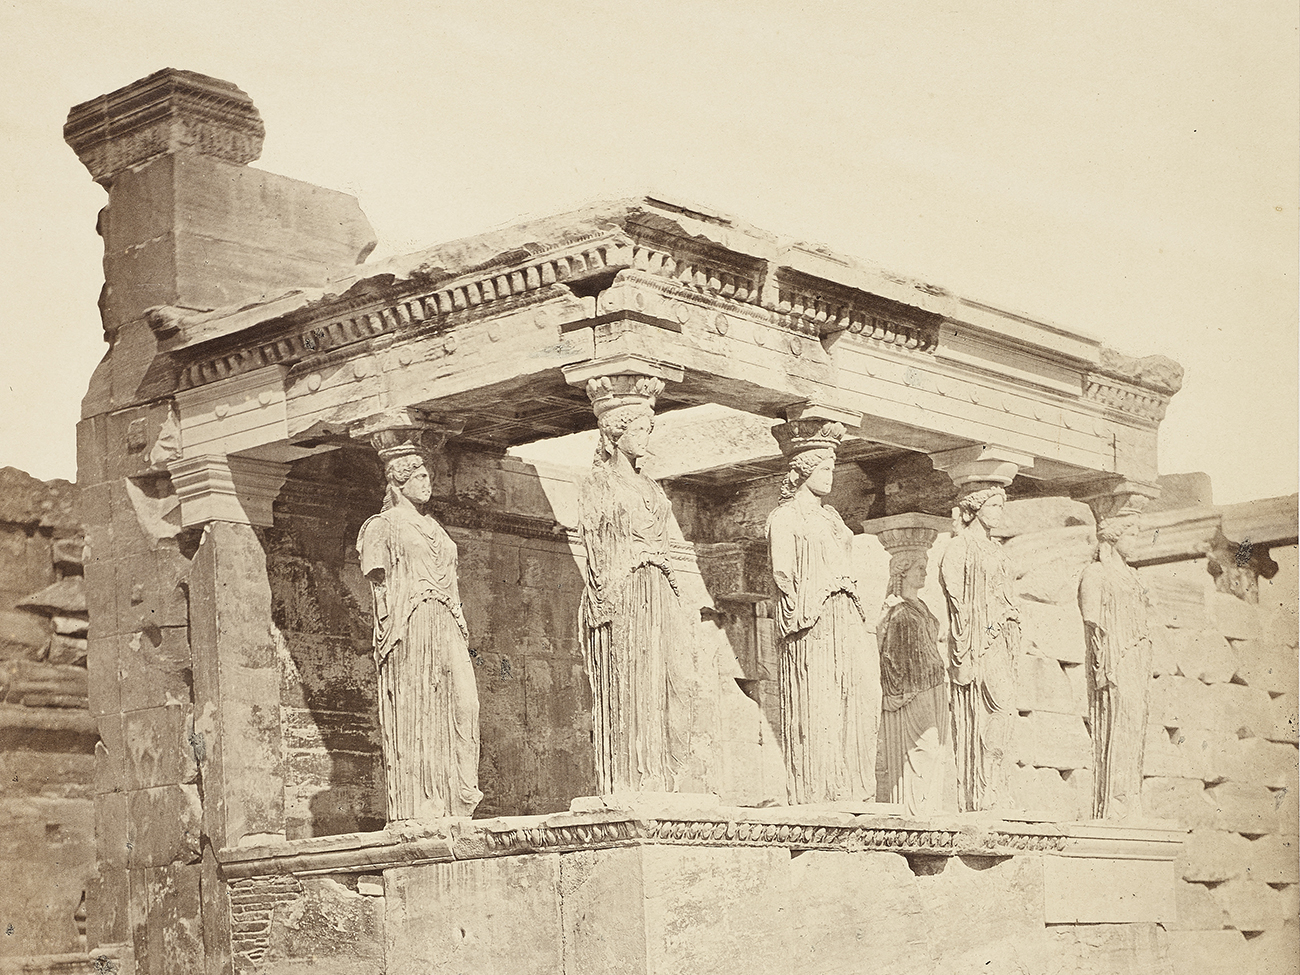 James Robertson, Les Cariatides de l'Erechteion, Athènes, 1853, tirage photographique, 30,8 x 26 cm, Mucem, inv. 2023.14.1 © Mucem